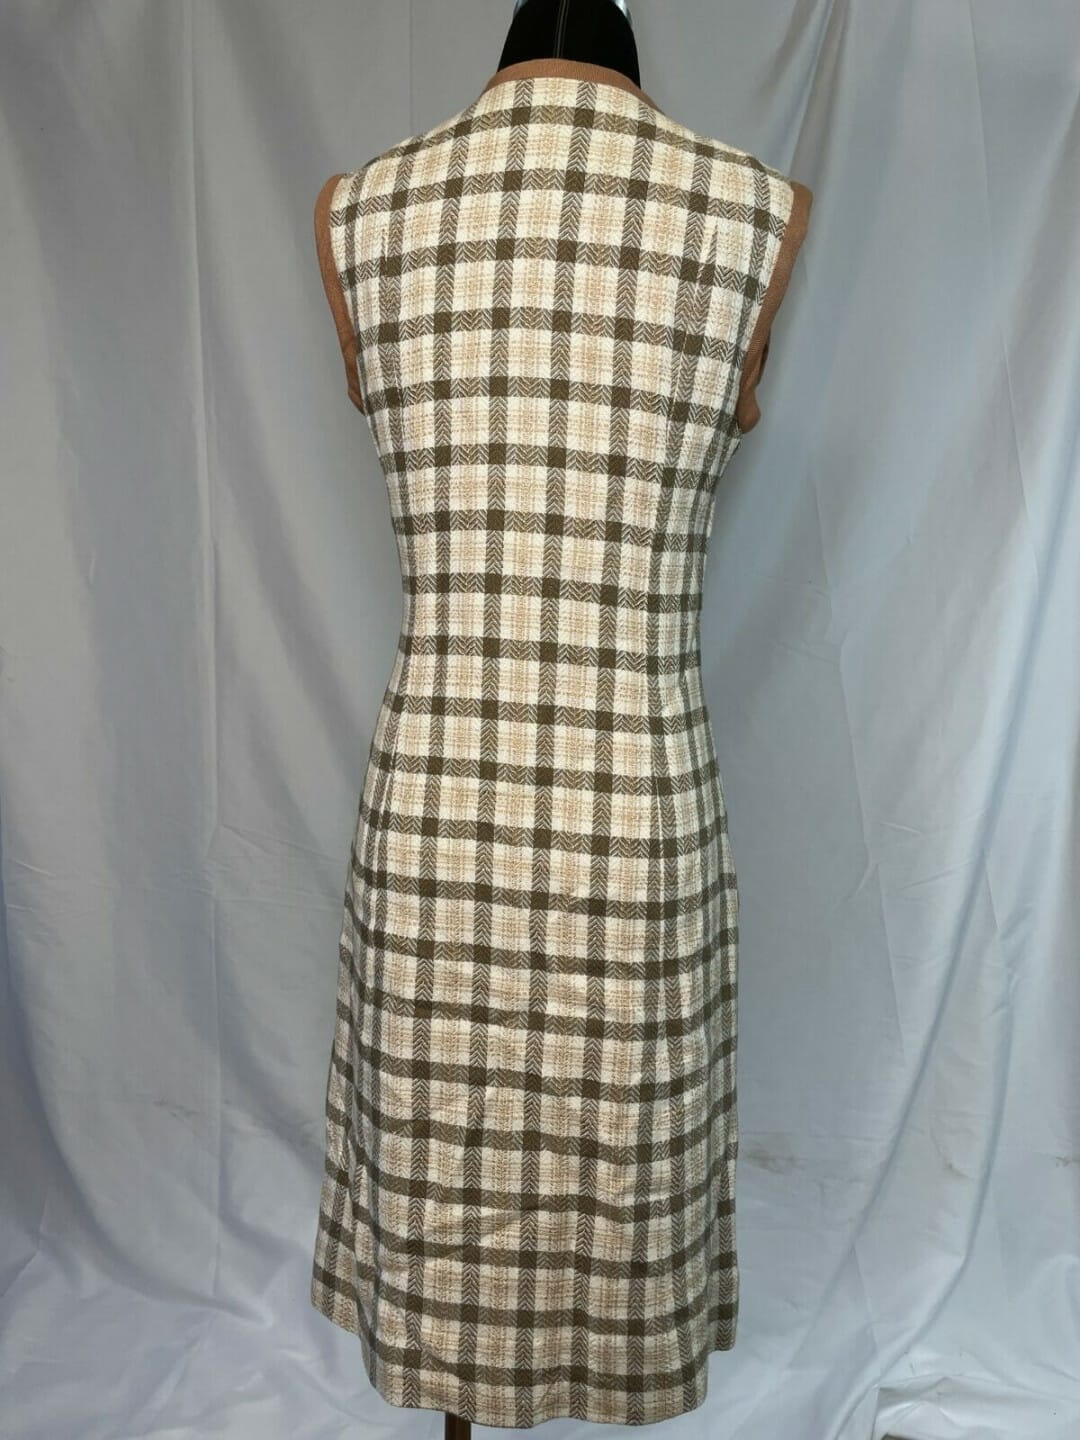 Vintage 1970s zip up the front dress by Elizabeth Byrne ...